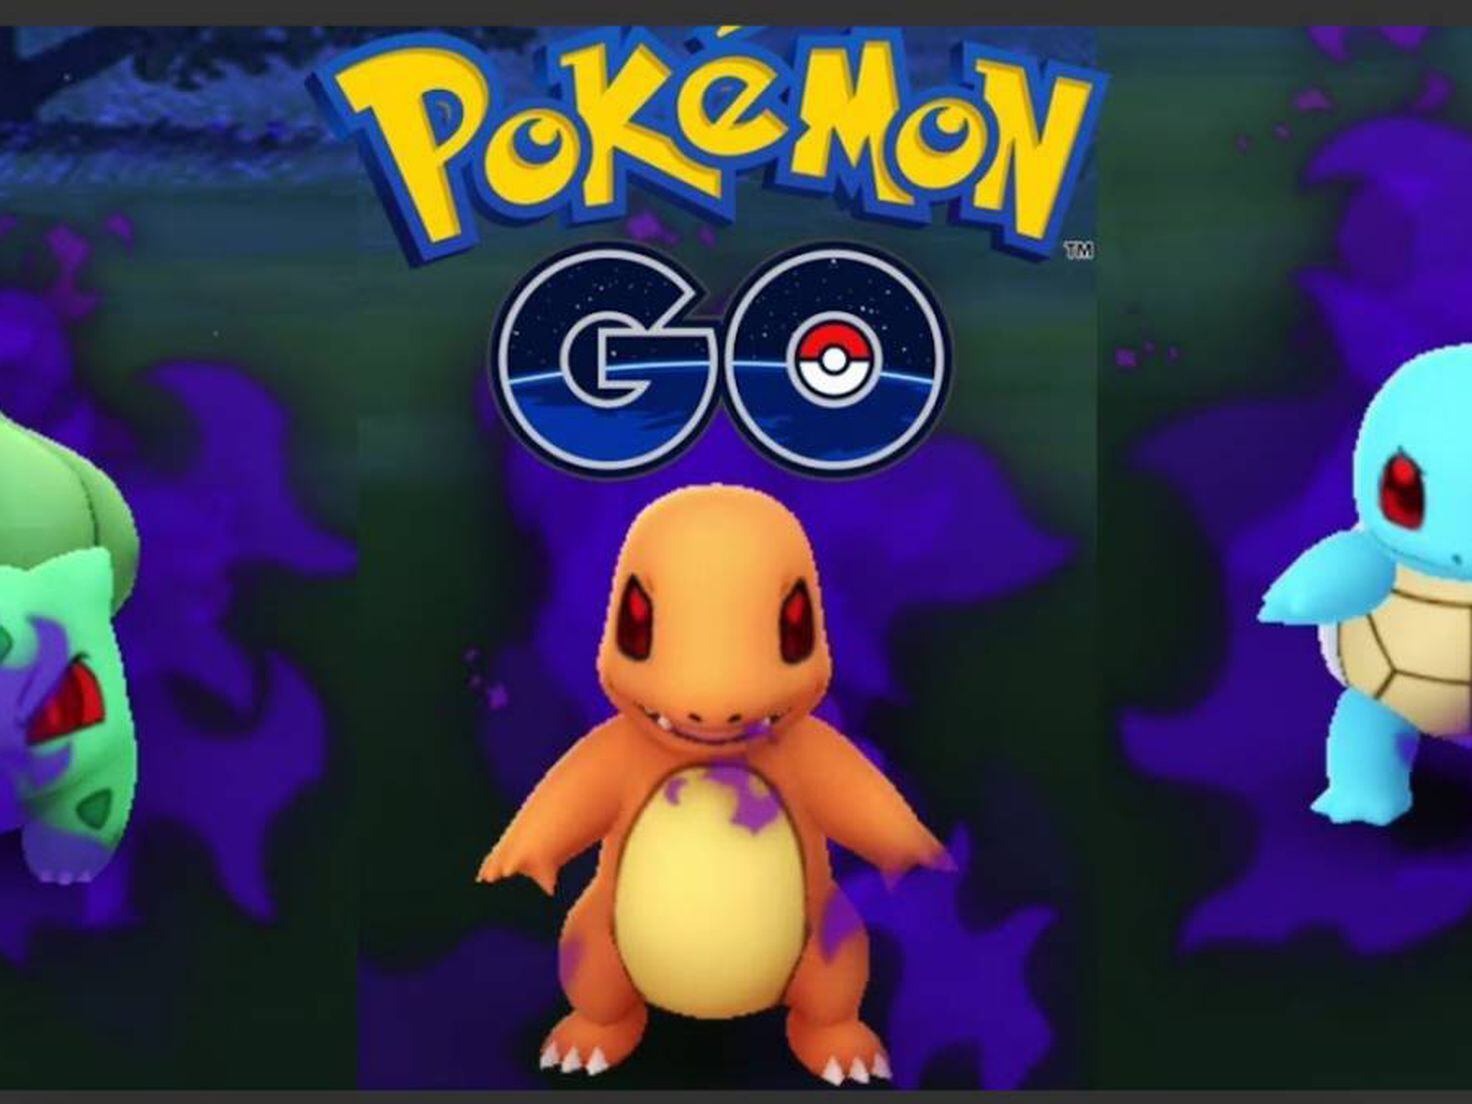 Pokémon GO: TODOS los Pokémon oscuros, cómo capturarlos y purificarlos